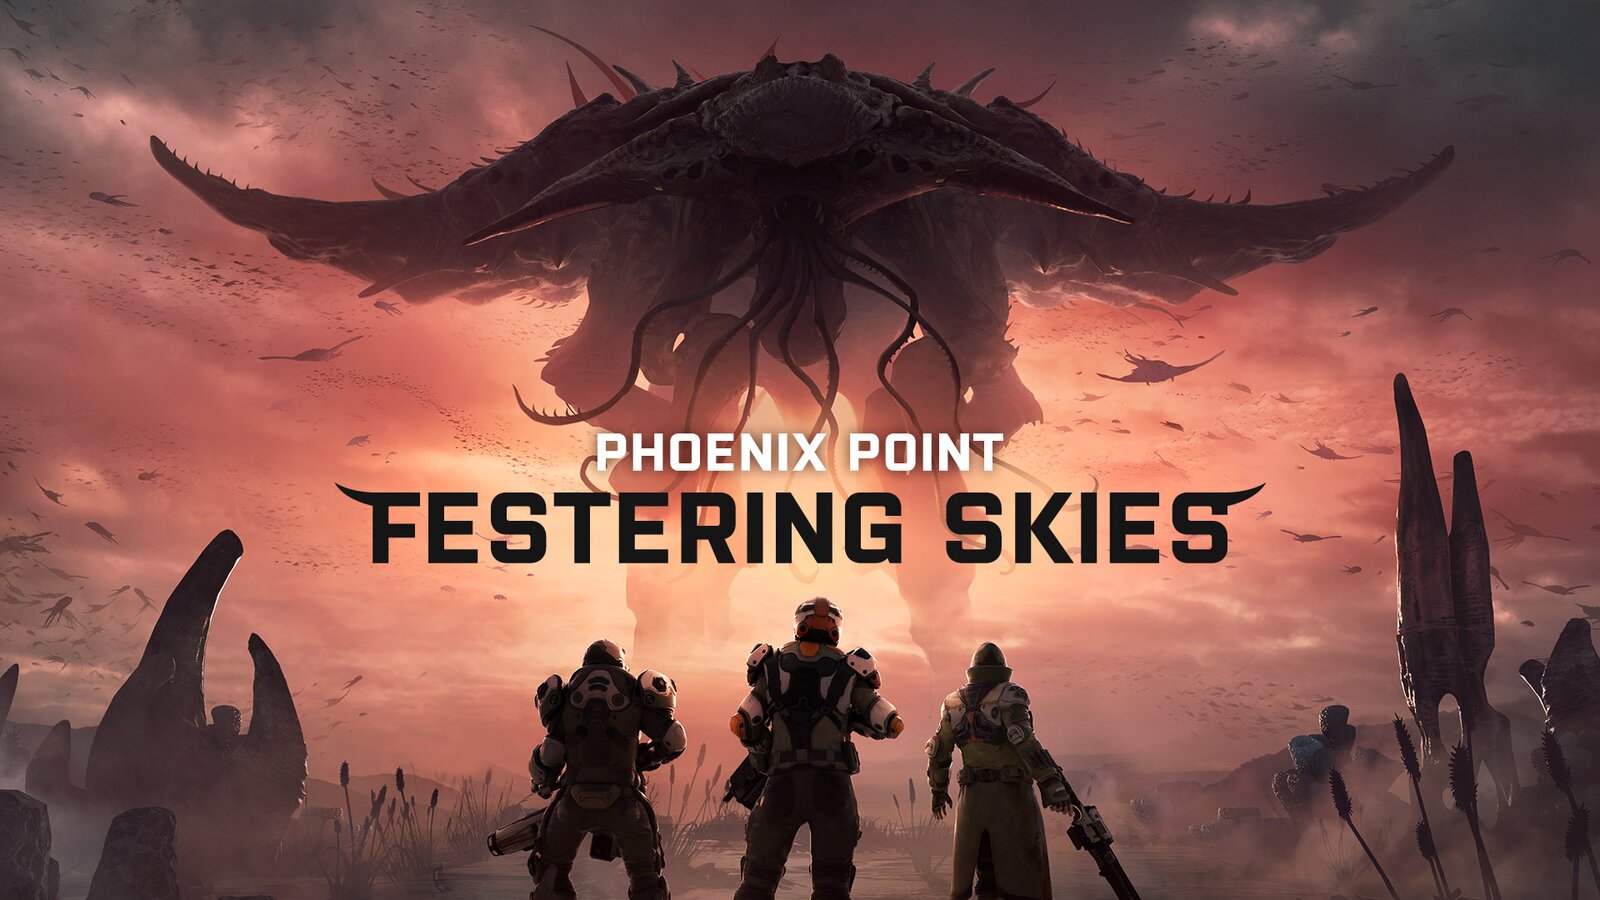 Phoenix Point - Festering Skies